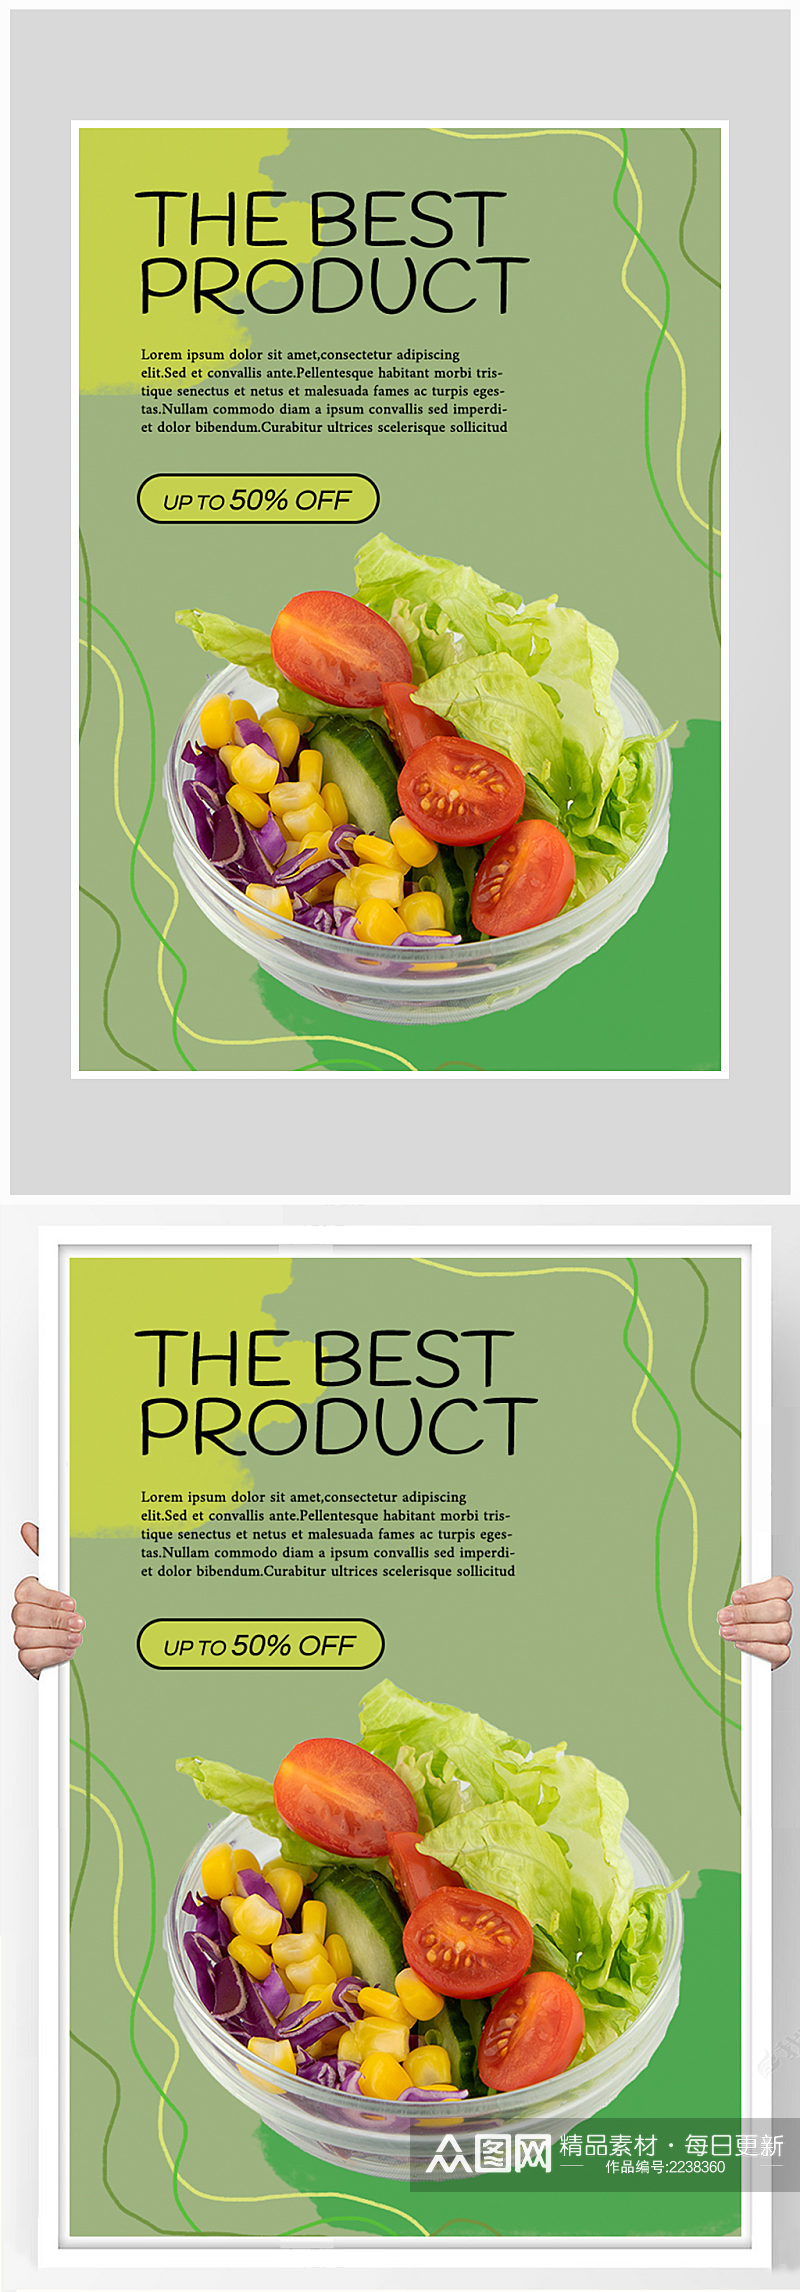 创意质感蔬菜沙拉健康锻炼海报设计素材